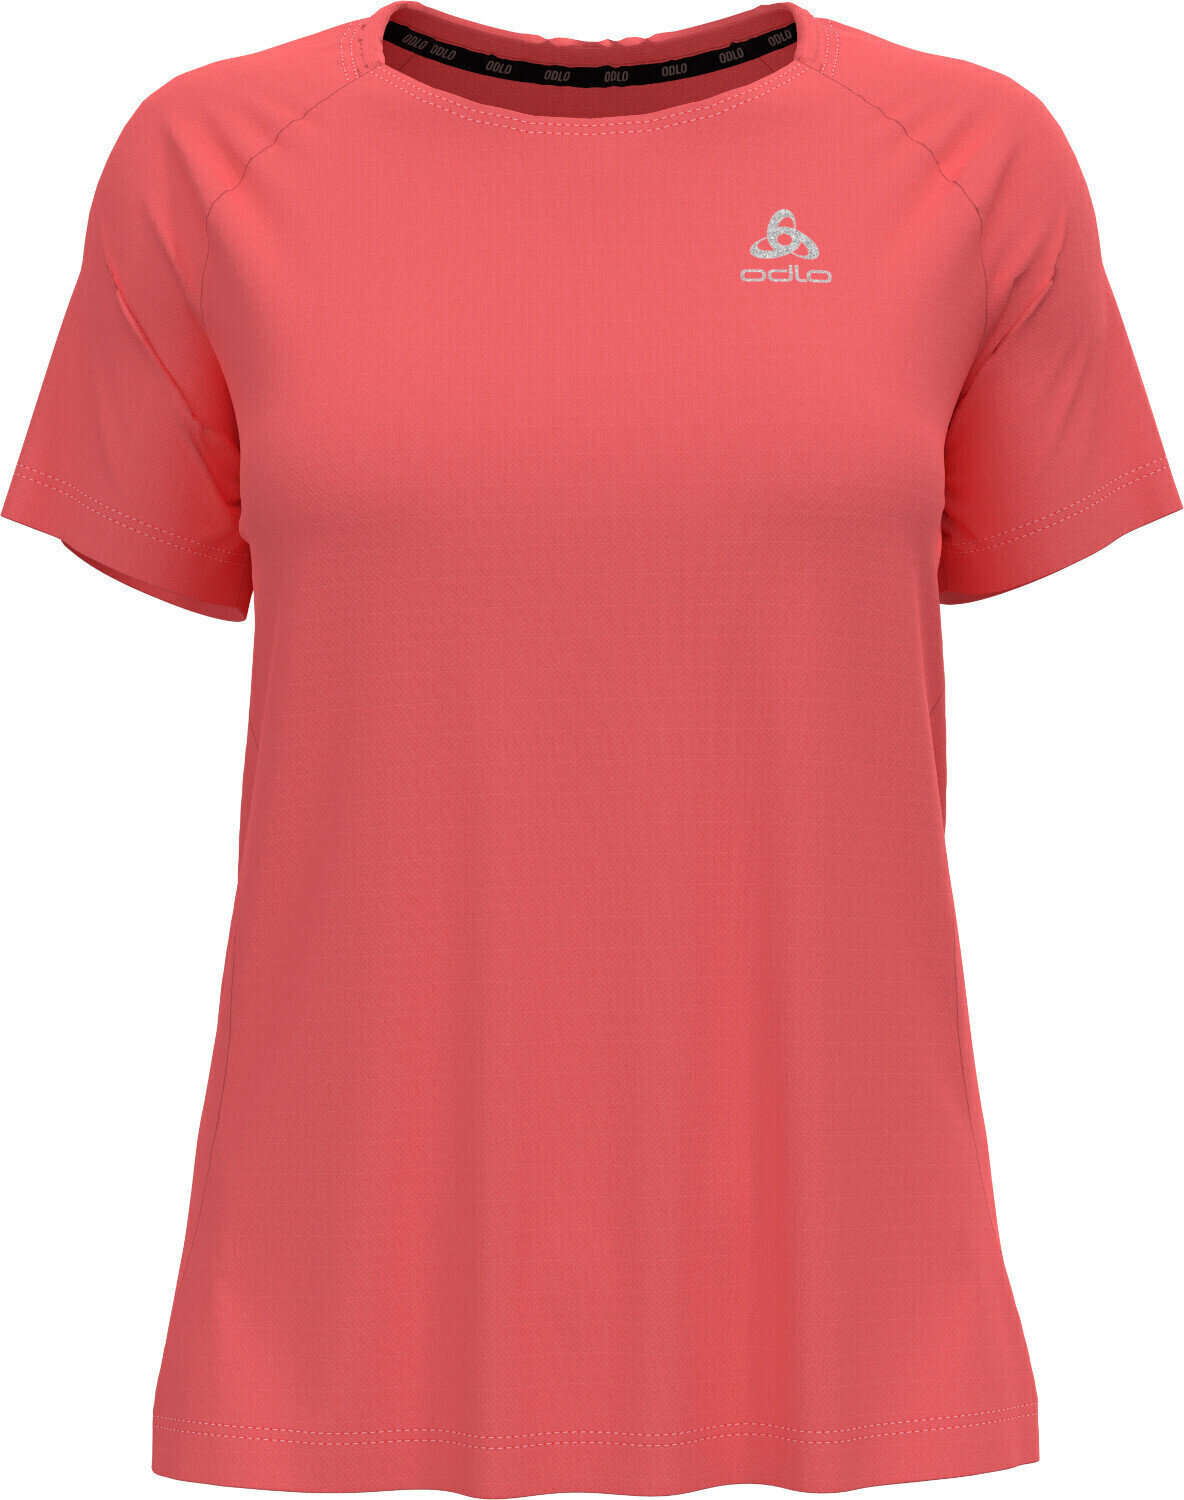 Majica za trčanje s kratkim rukavom
 Odlo Essential T-Shirt Siesta S Majica za trčanje s kratkim rukavom